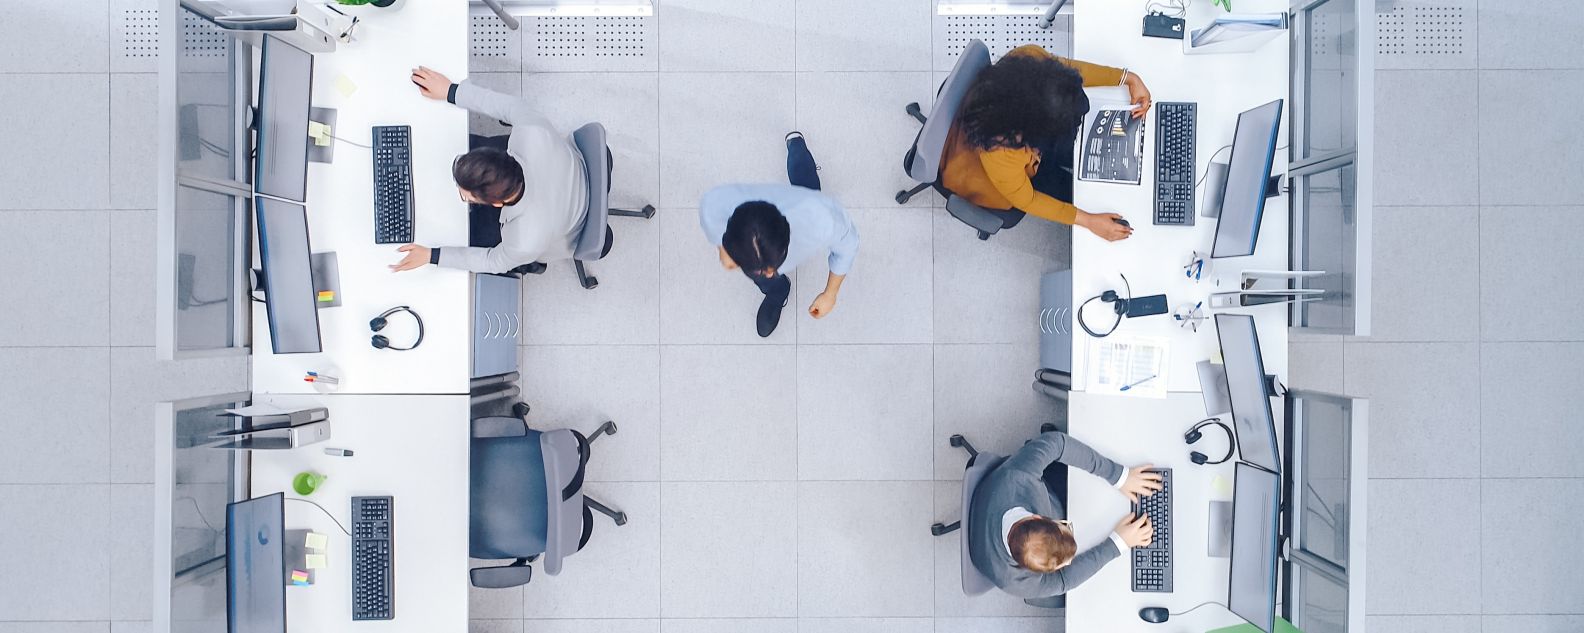 Vista aérea de personas trabajando en una oficina